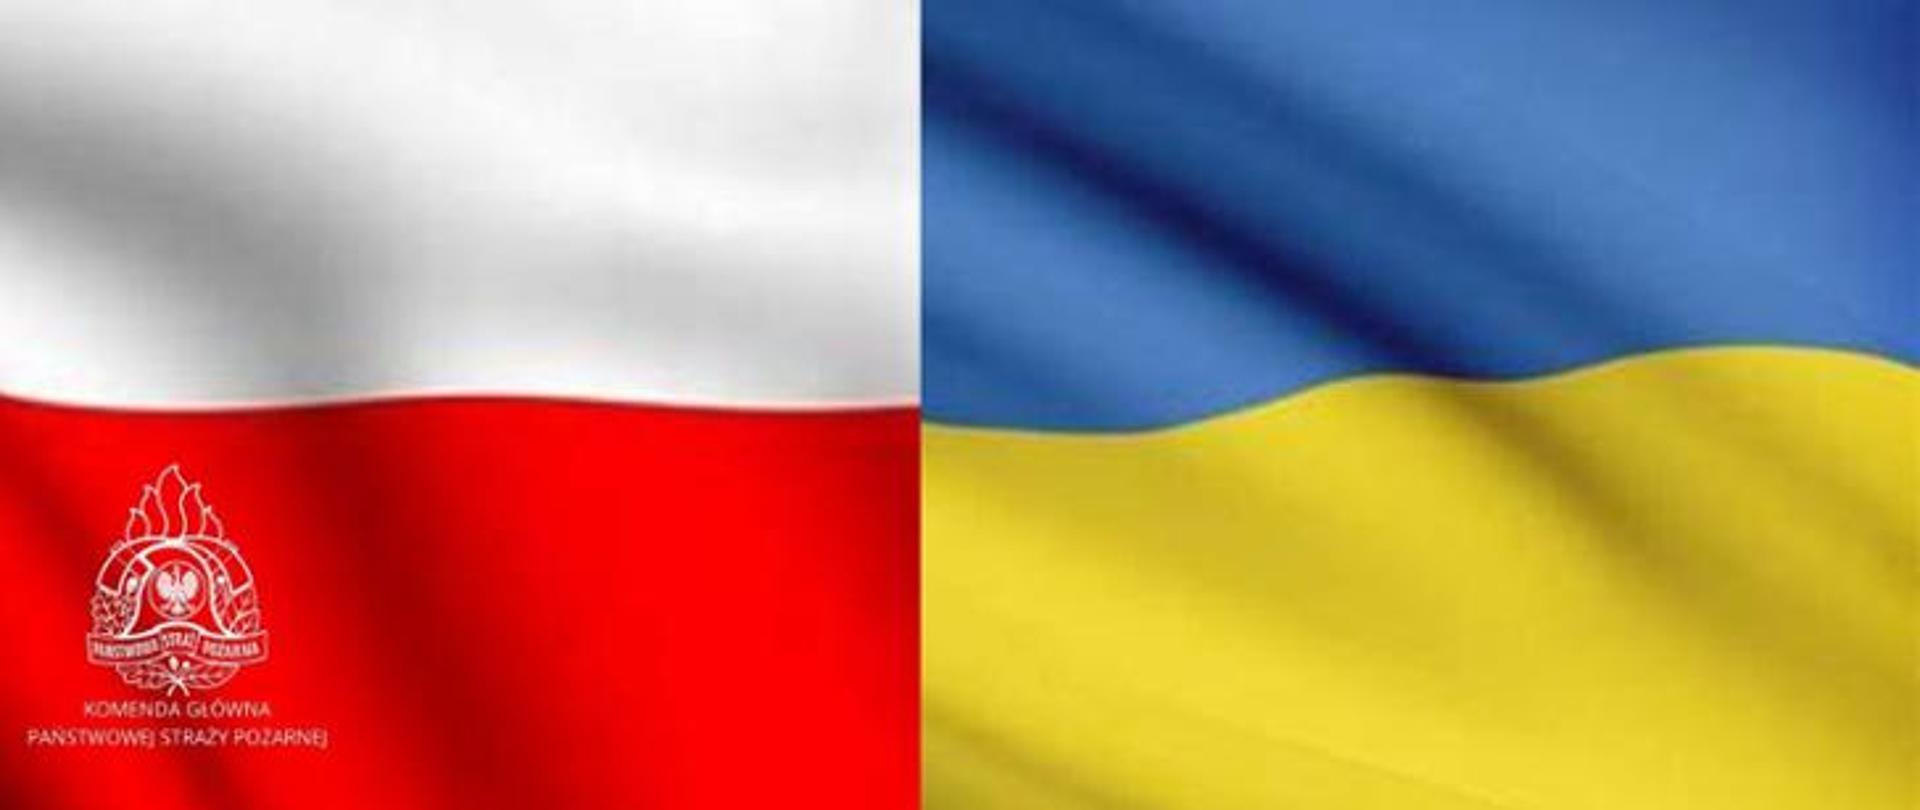 grafika przedstawia z lewej strony barwy narodowe Polski czyli biało czerwony kolor, z prawej barwy Ukrainy niebiesko żółte